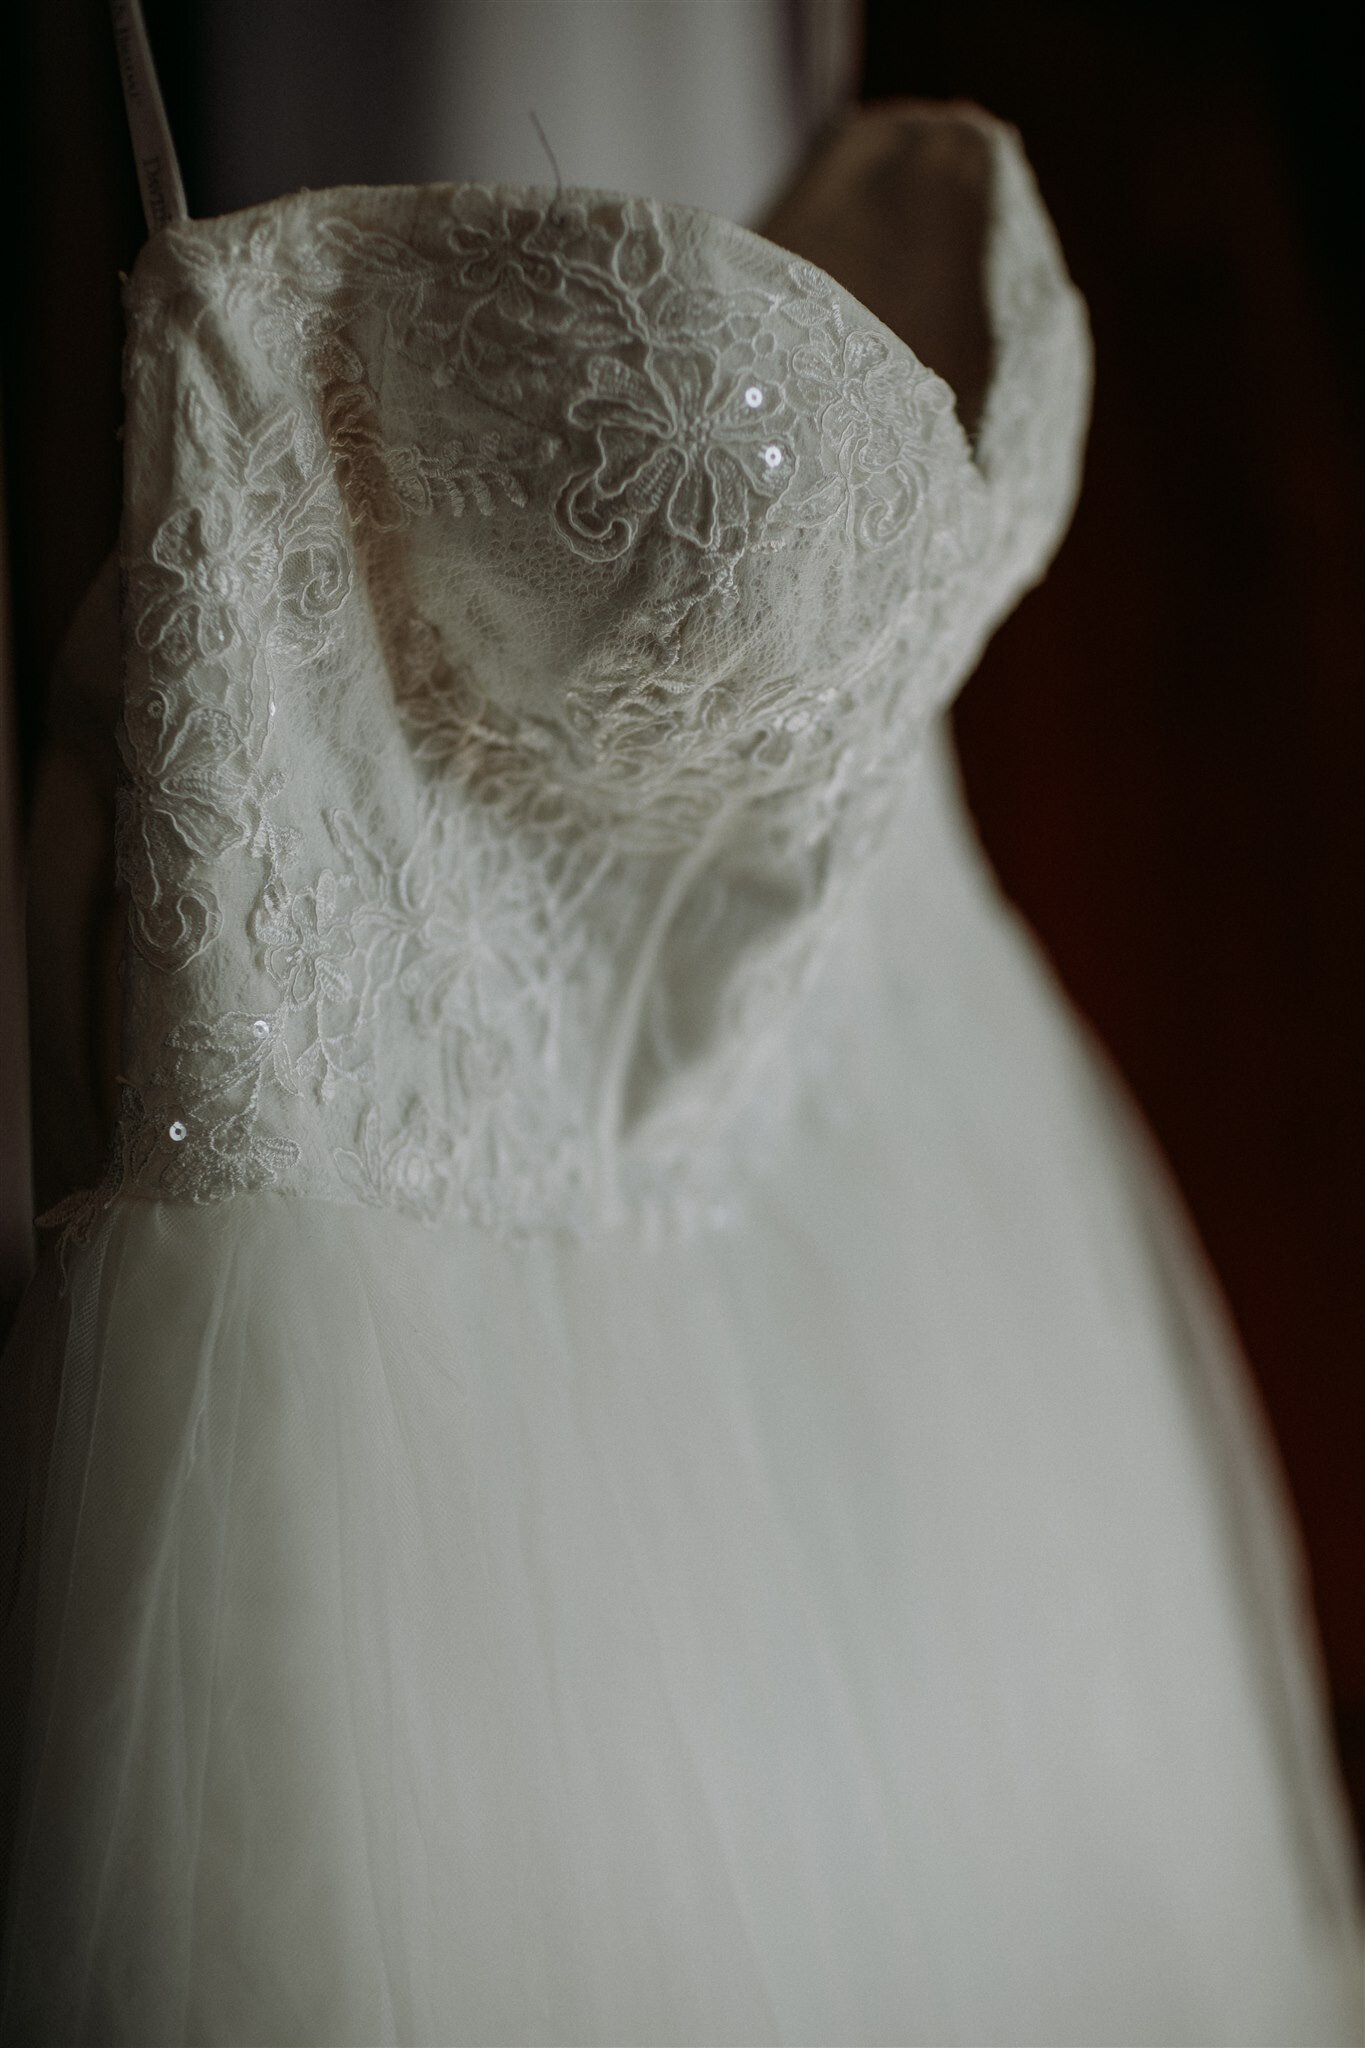 Culzean Castle Scotland elopement wedding dress details in castle | adventure elopement photographer